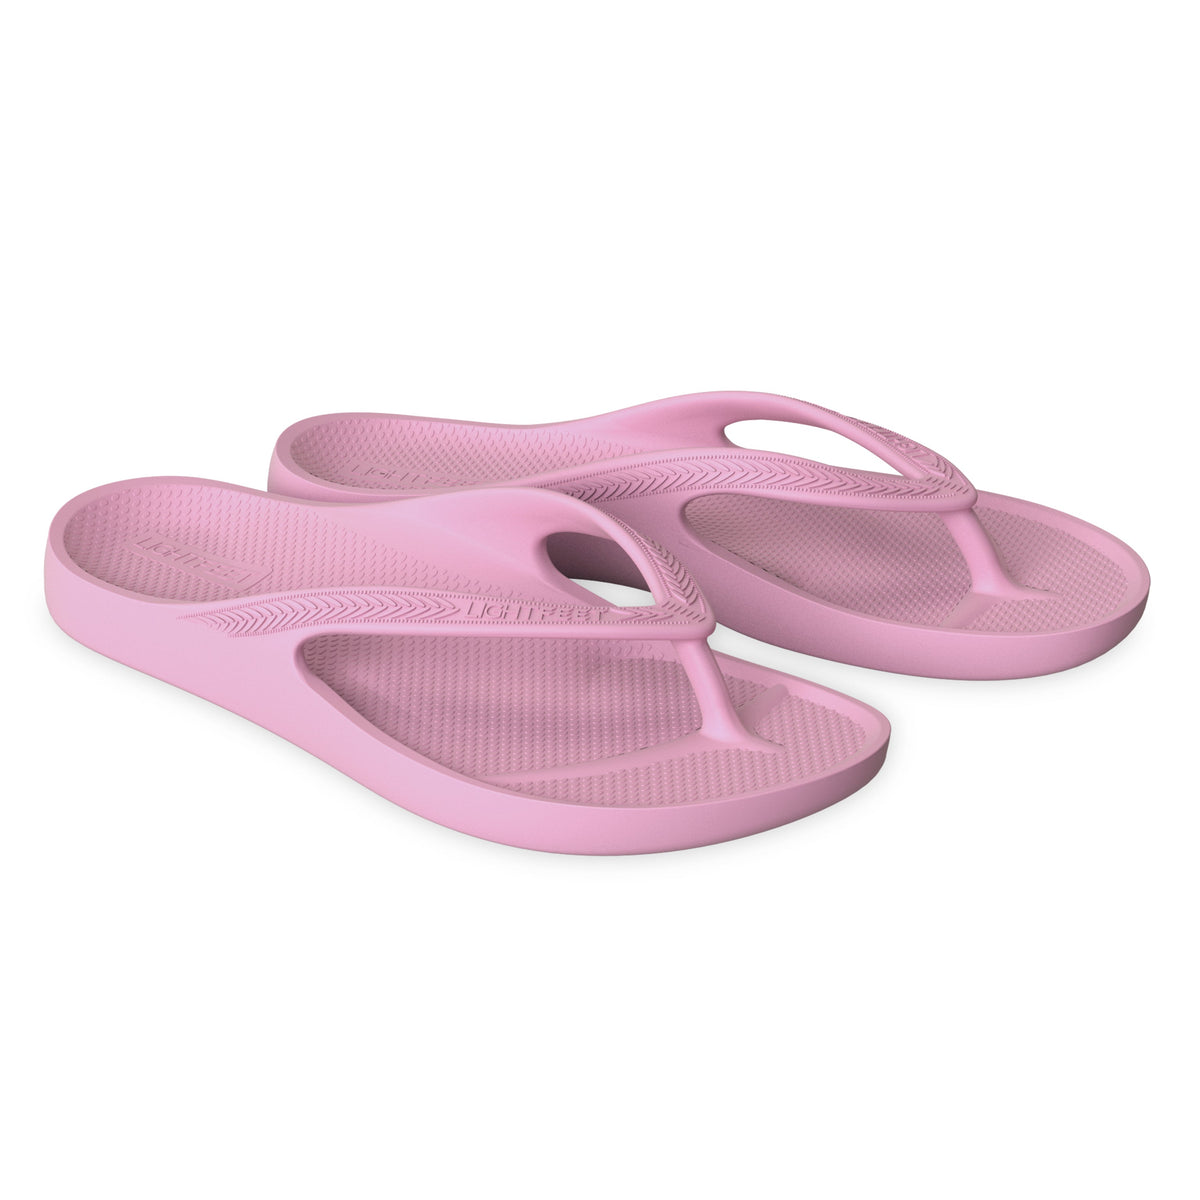 LightFeet Arch Support Flip Flops/Thongs - Pink